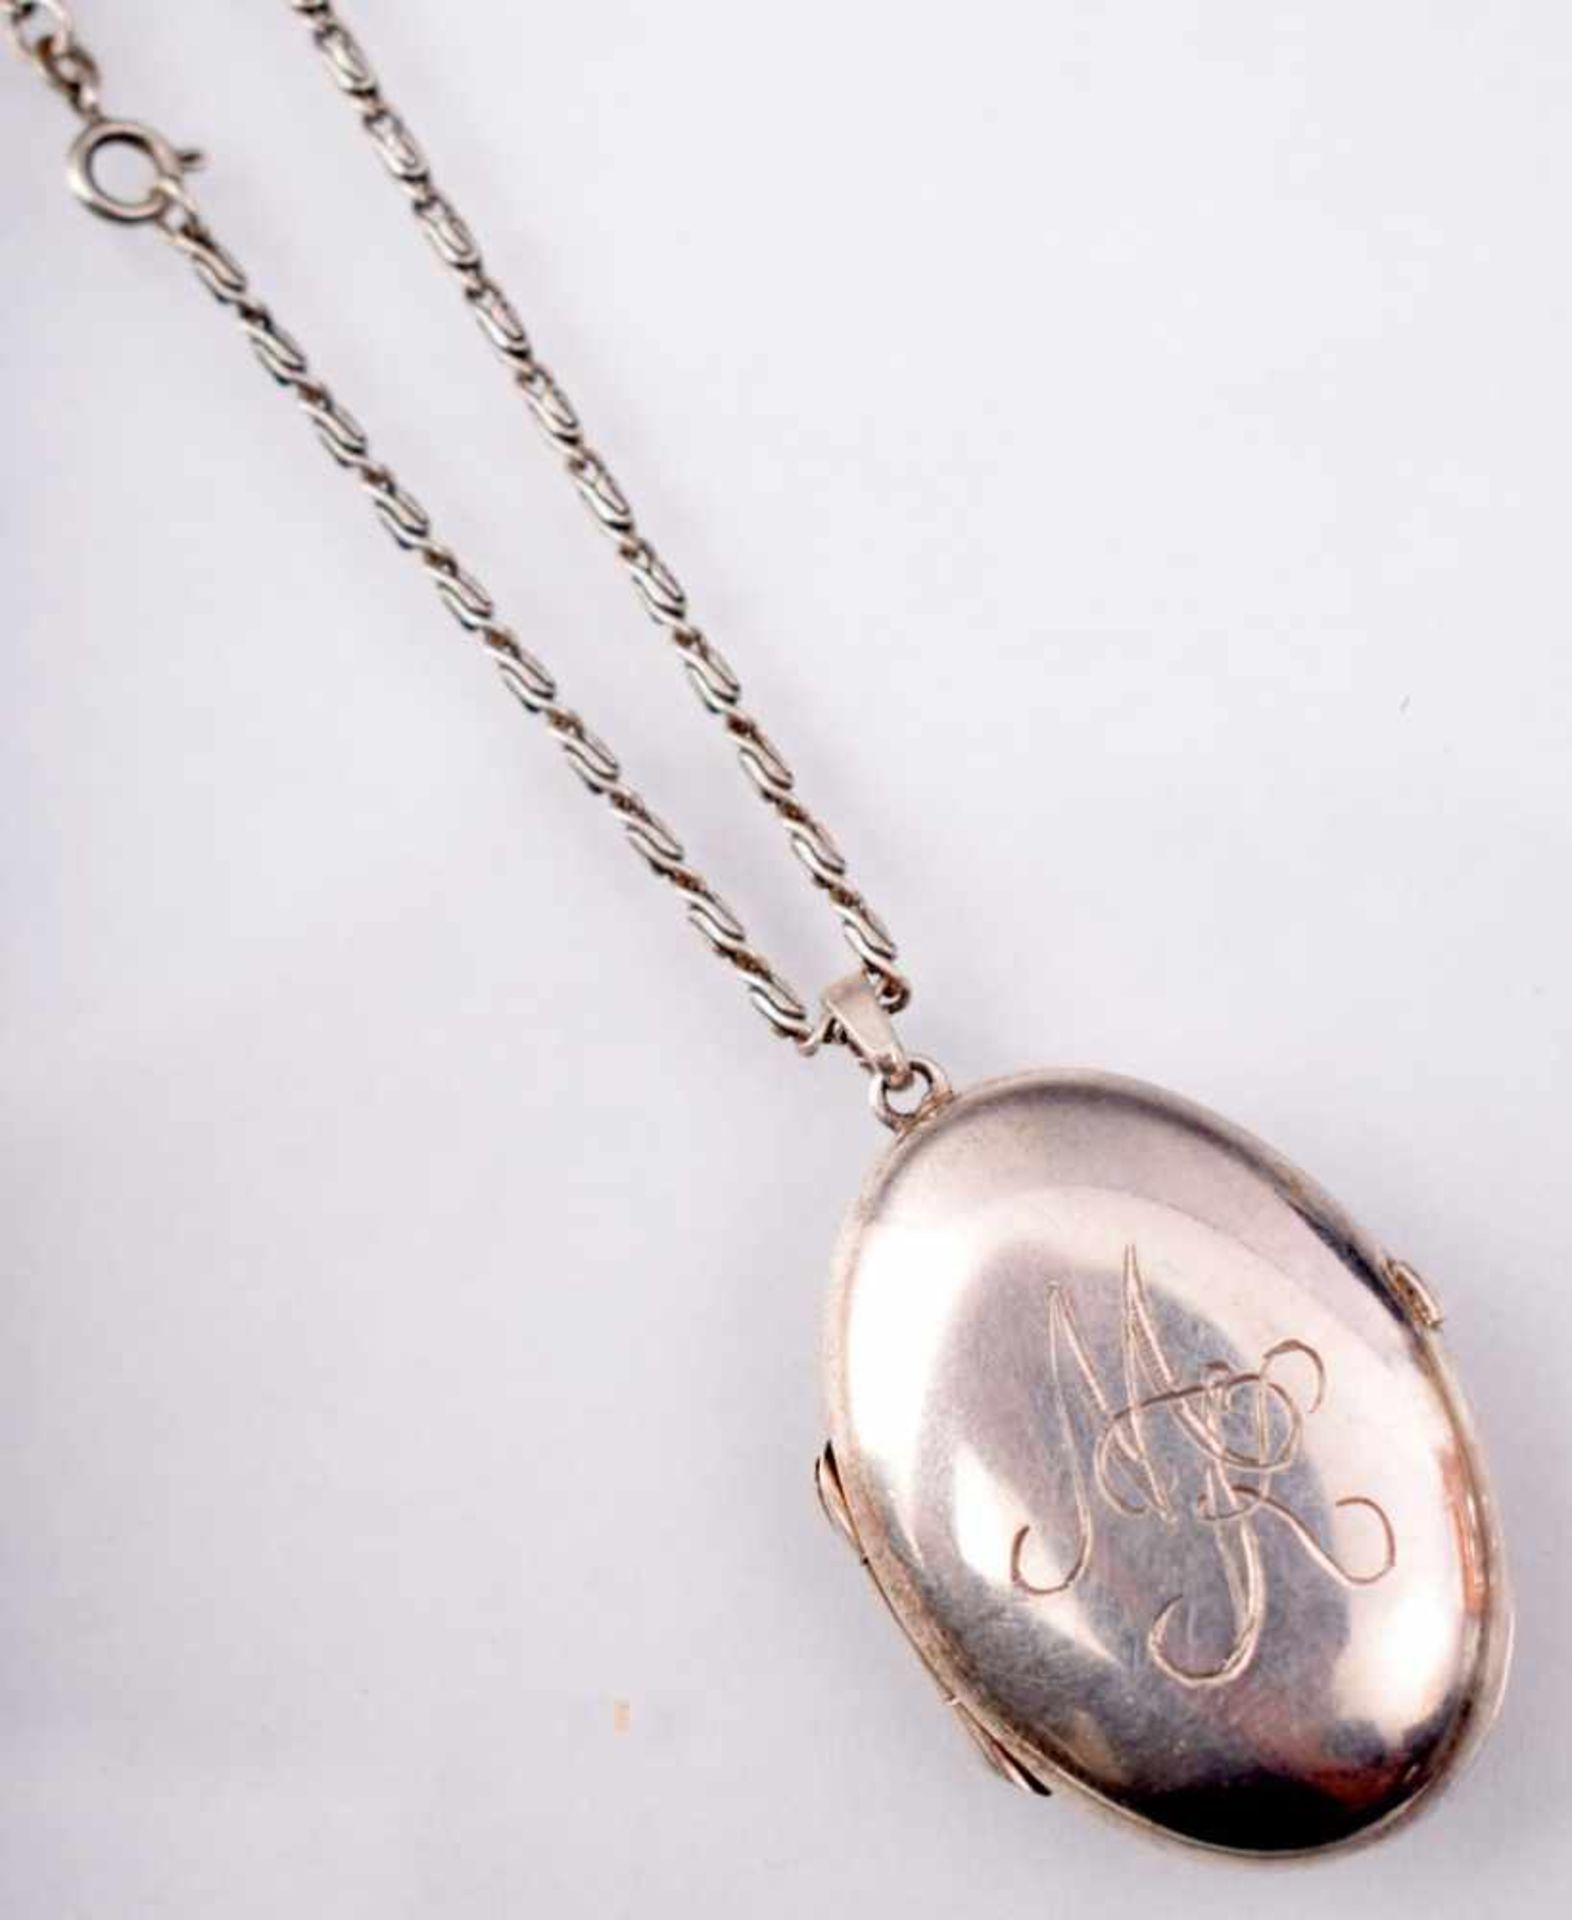 Medaillon mit Kette mit Monogramm MK, Kette 925er Silber